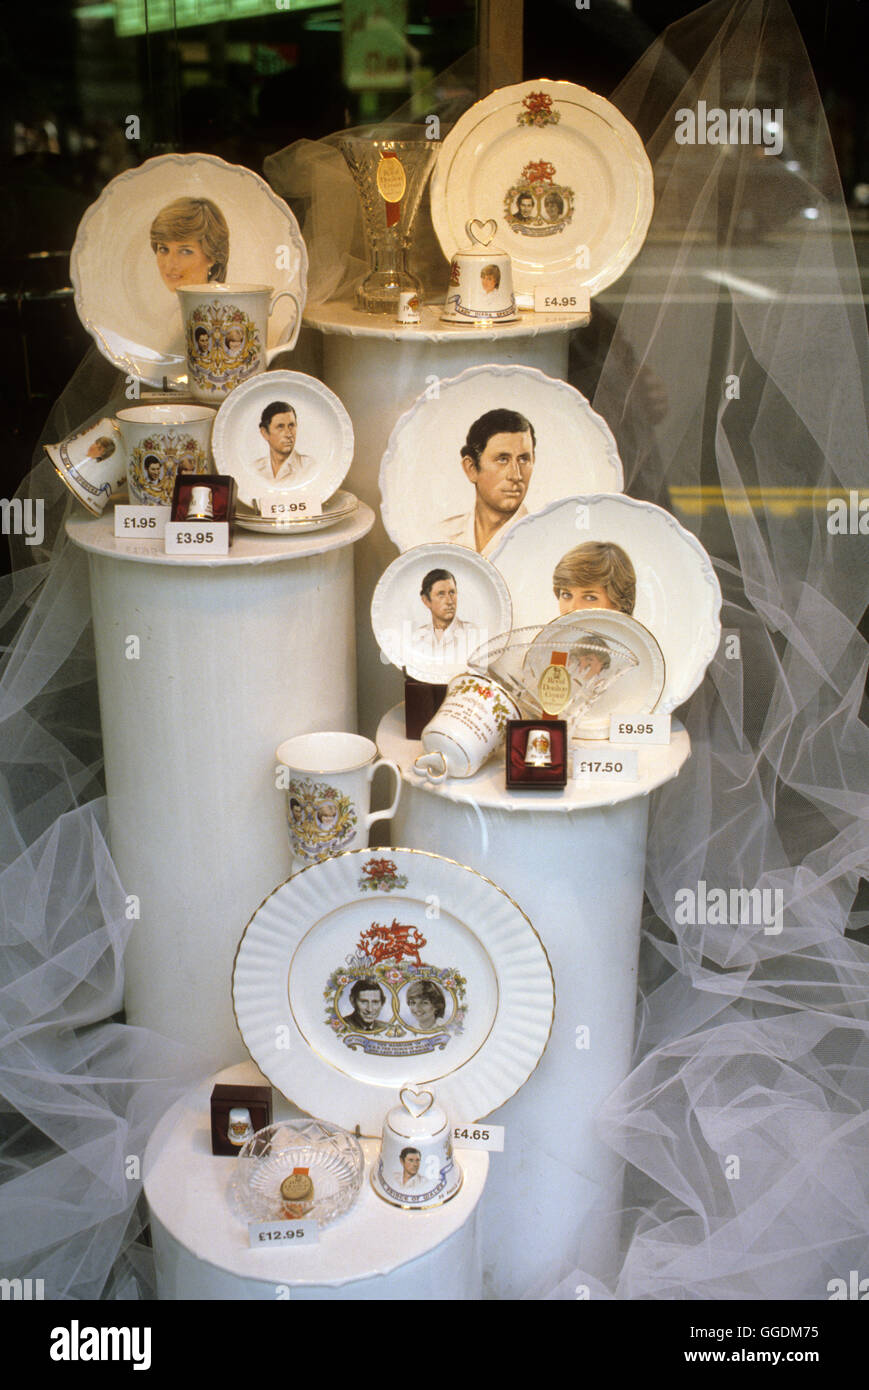 Mariage royal du Prince Charles et Lady Diana Spencer, assiettes souvenirs avec leurs images photos du Prince Charles et Lady Diana Spencer exposées dans une vitrine du centre de Londres. 29 juillet 1981 Royaume-Uni 1980s HOMER SYKES Banque D'Images